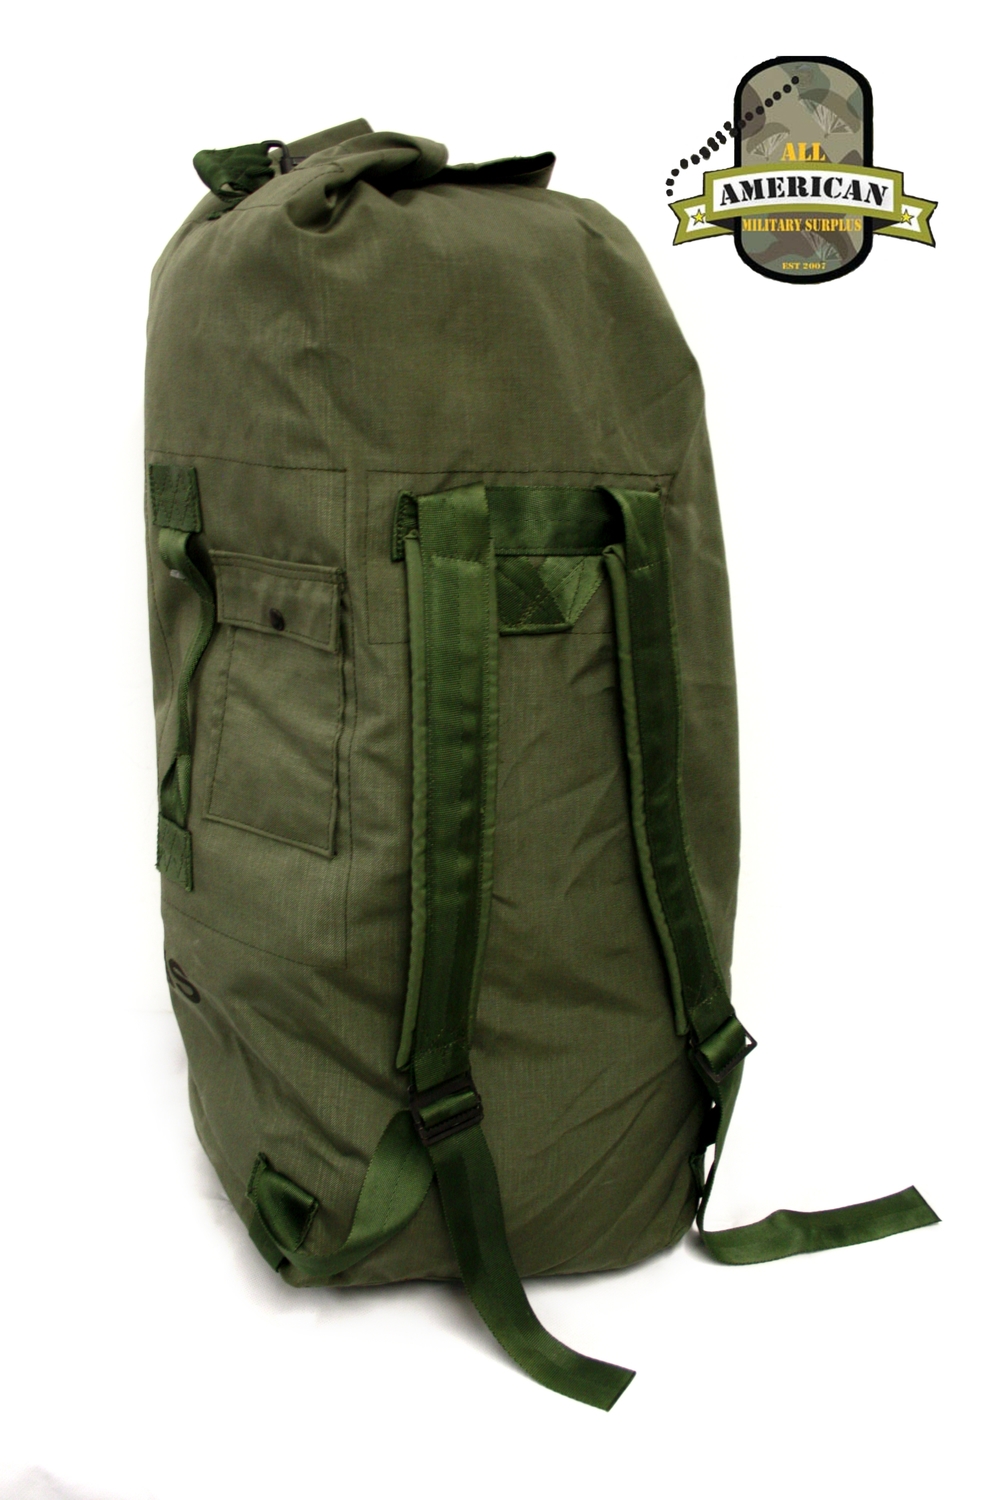 8465016046541 Improved Duffel Bag, OD Green, USGI Issue